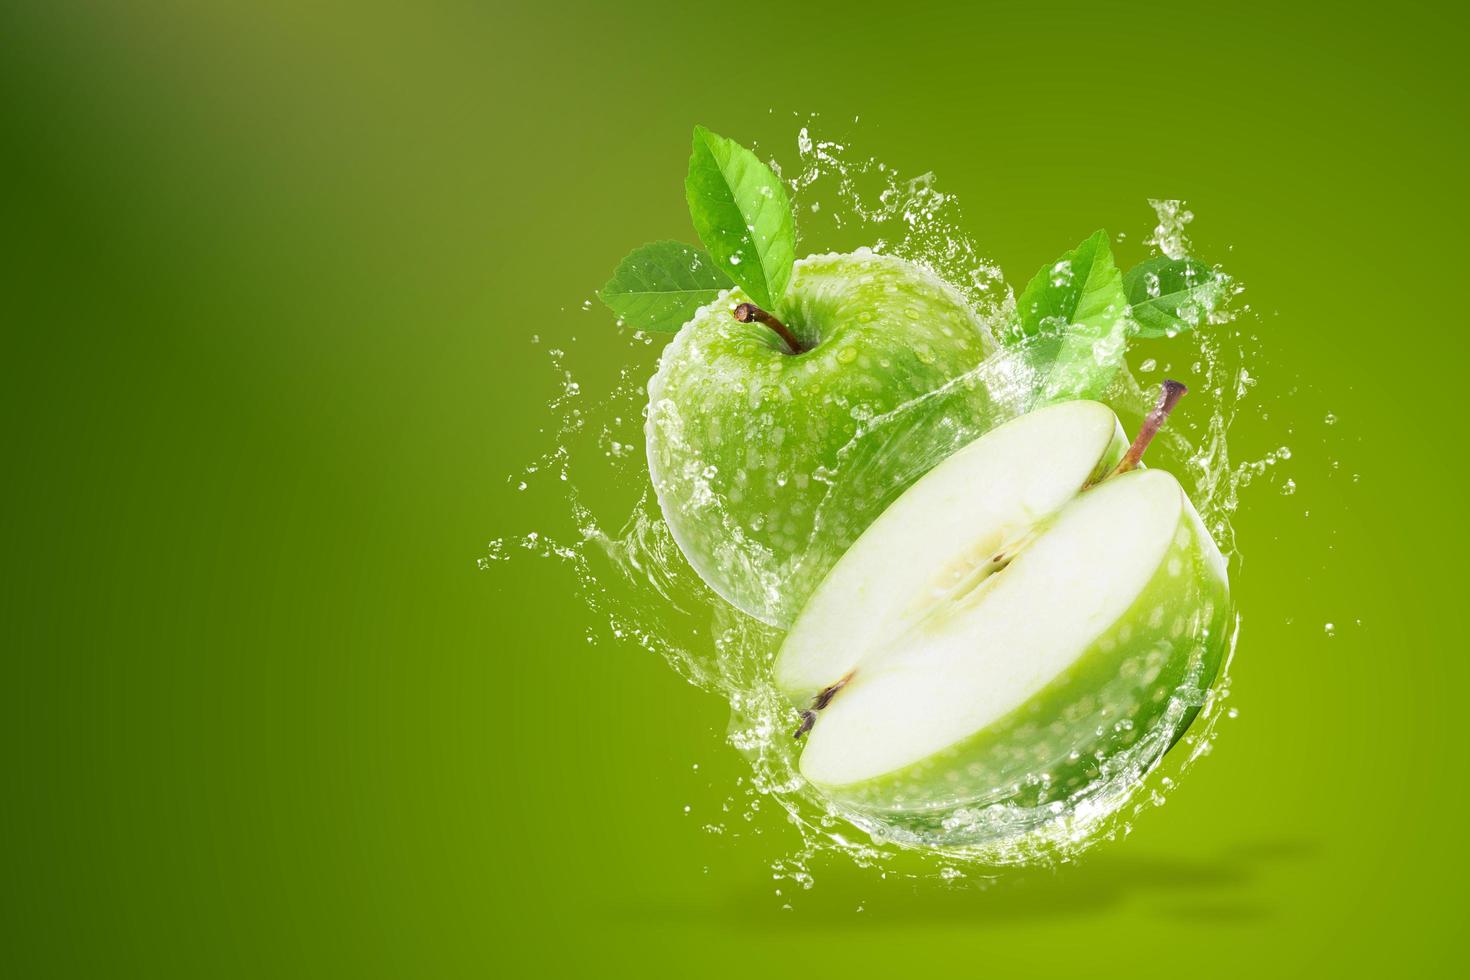 water spatten op verse groene appel foto